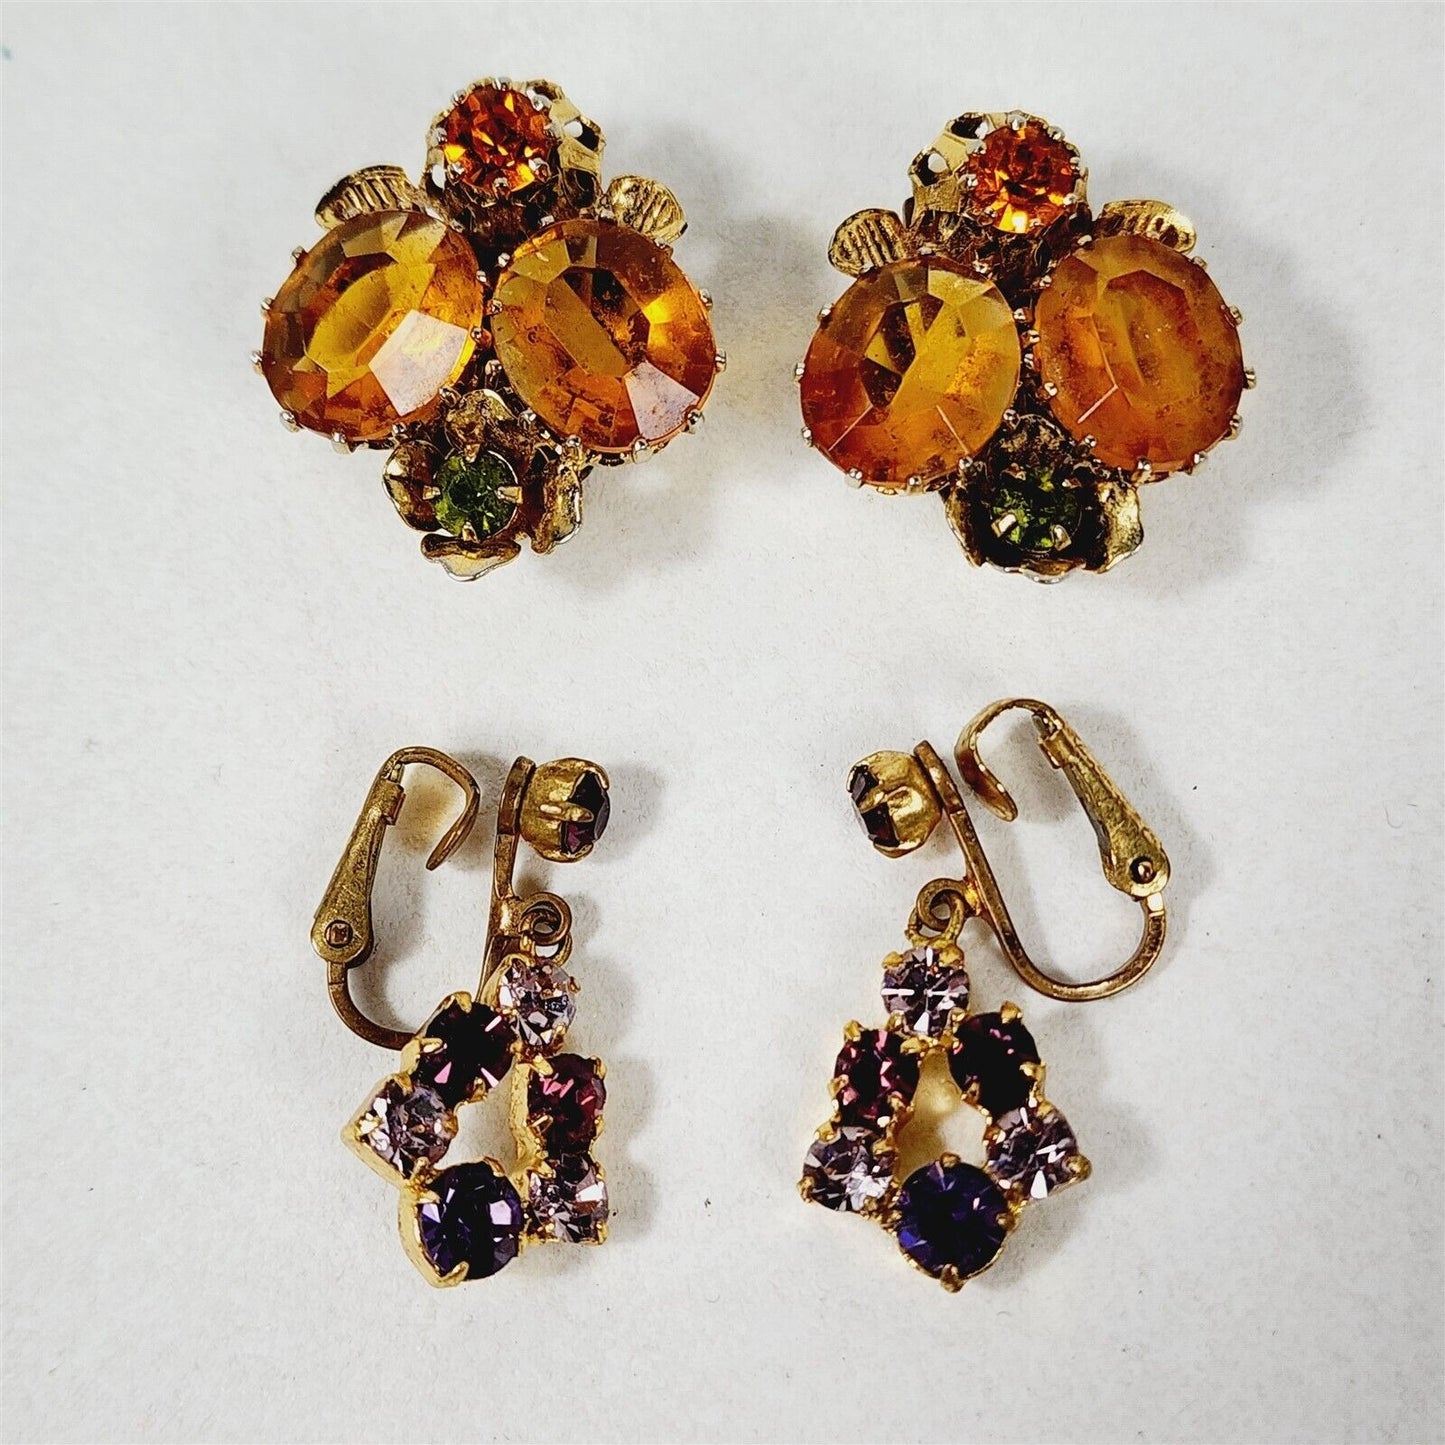 2 Pairs of Vintage Austria Marked Clip On Rhinestone Earrings Purple & Orange